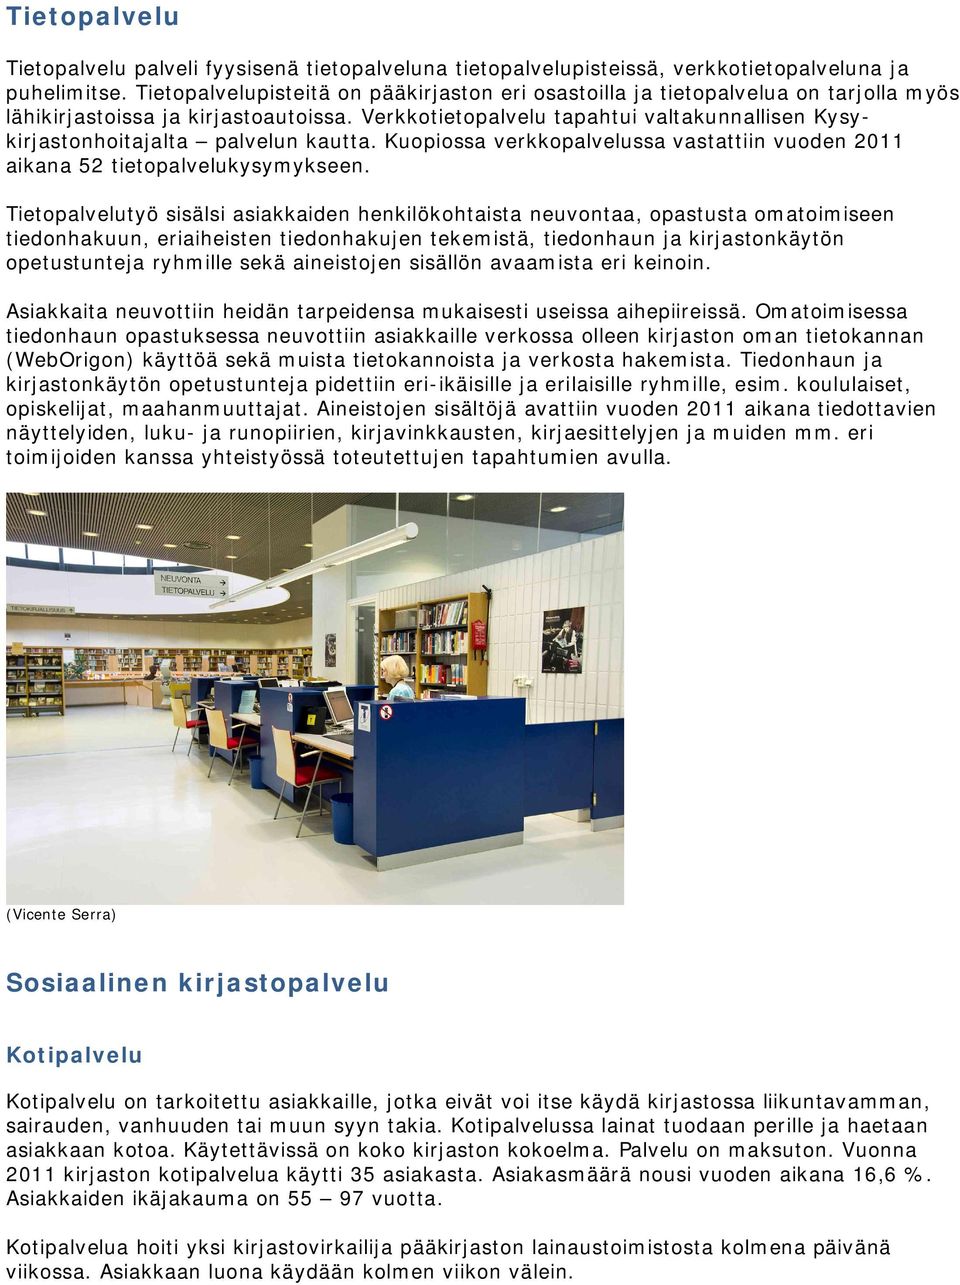 Verkkotietopalvelu tapahtui valtakunnallisen Kysykirjastonhoitajalta palvelun kautta. Kuopiossa verkkopalvelussa vastattiin vuoden 2011 aikana 52 tietopalvelukysymykseen.